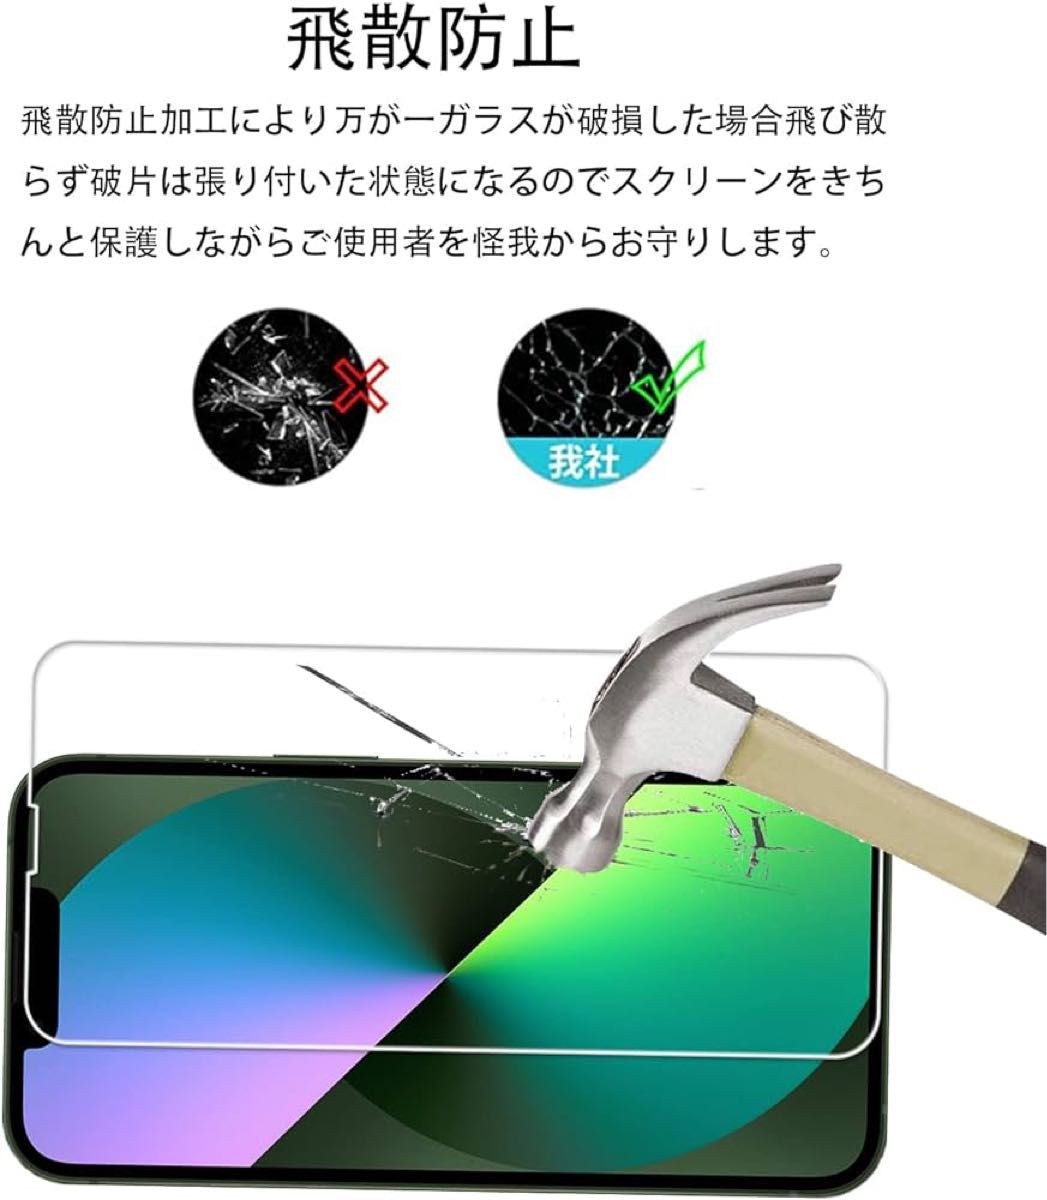 ★即購入OK★2枚セット ガイド枠付き KPNS 日本素材製 強化ガラス iPhone14/13 / iPhone 13 Pro用